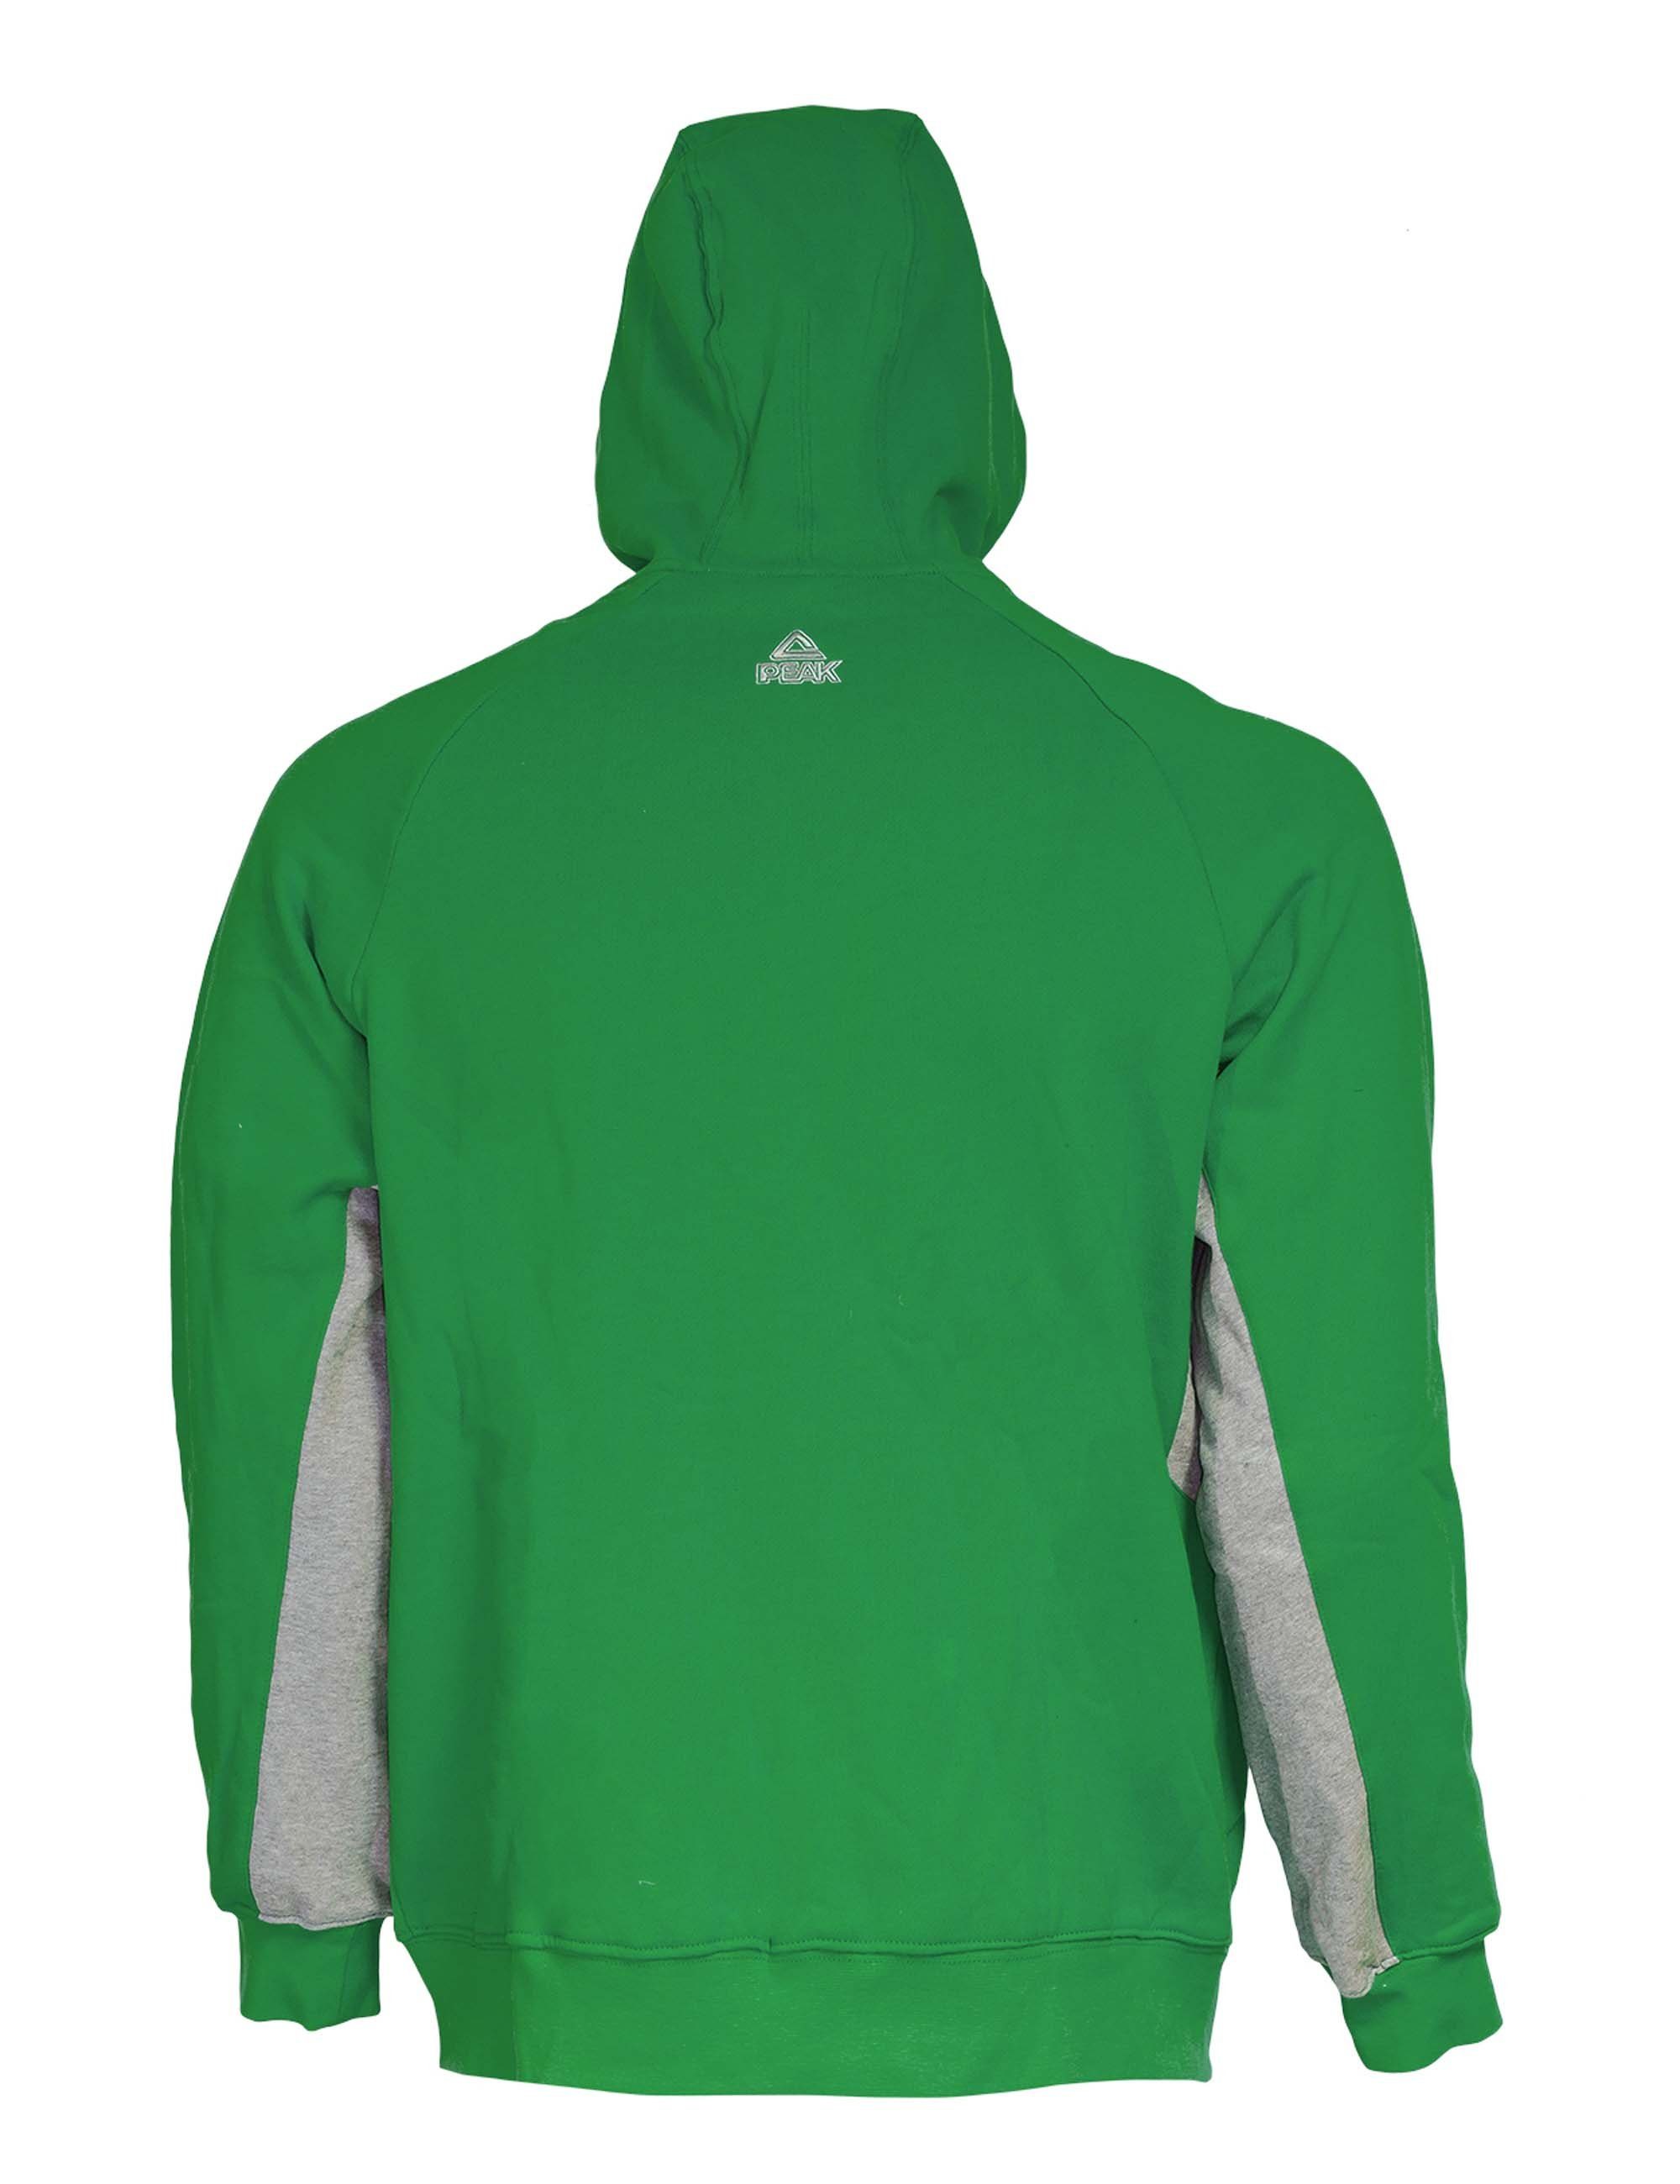 Sweatjacke Hoody sportlichen PEAK Zip im Look grün